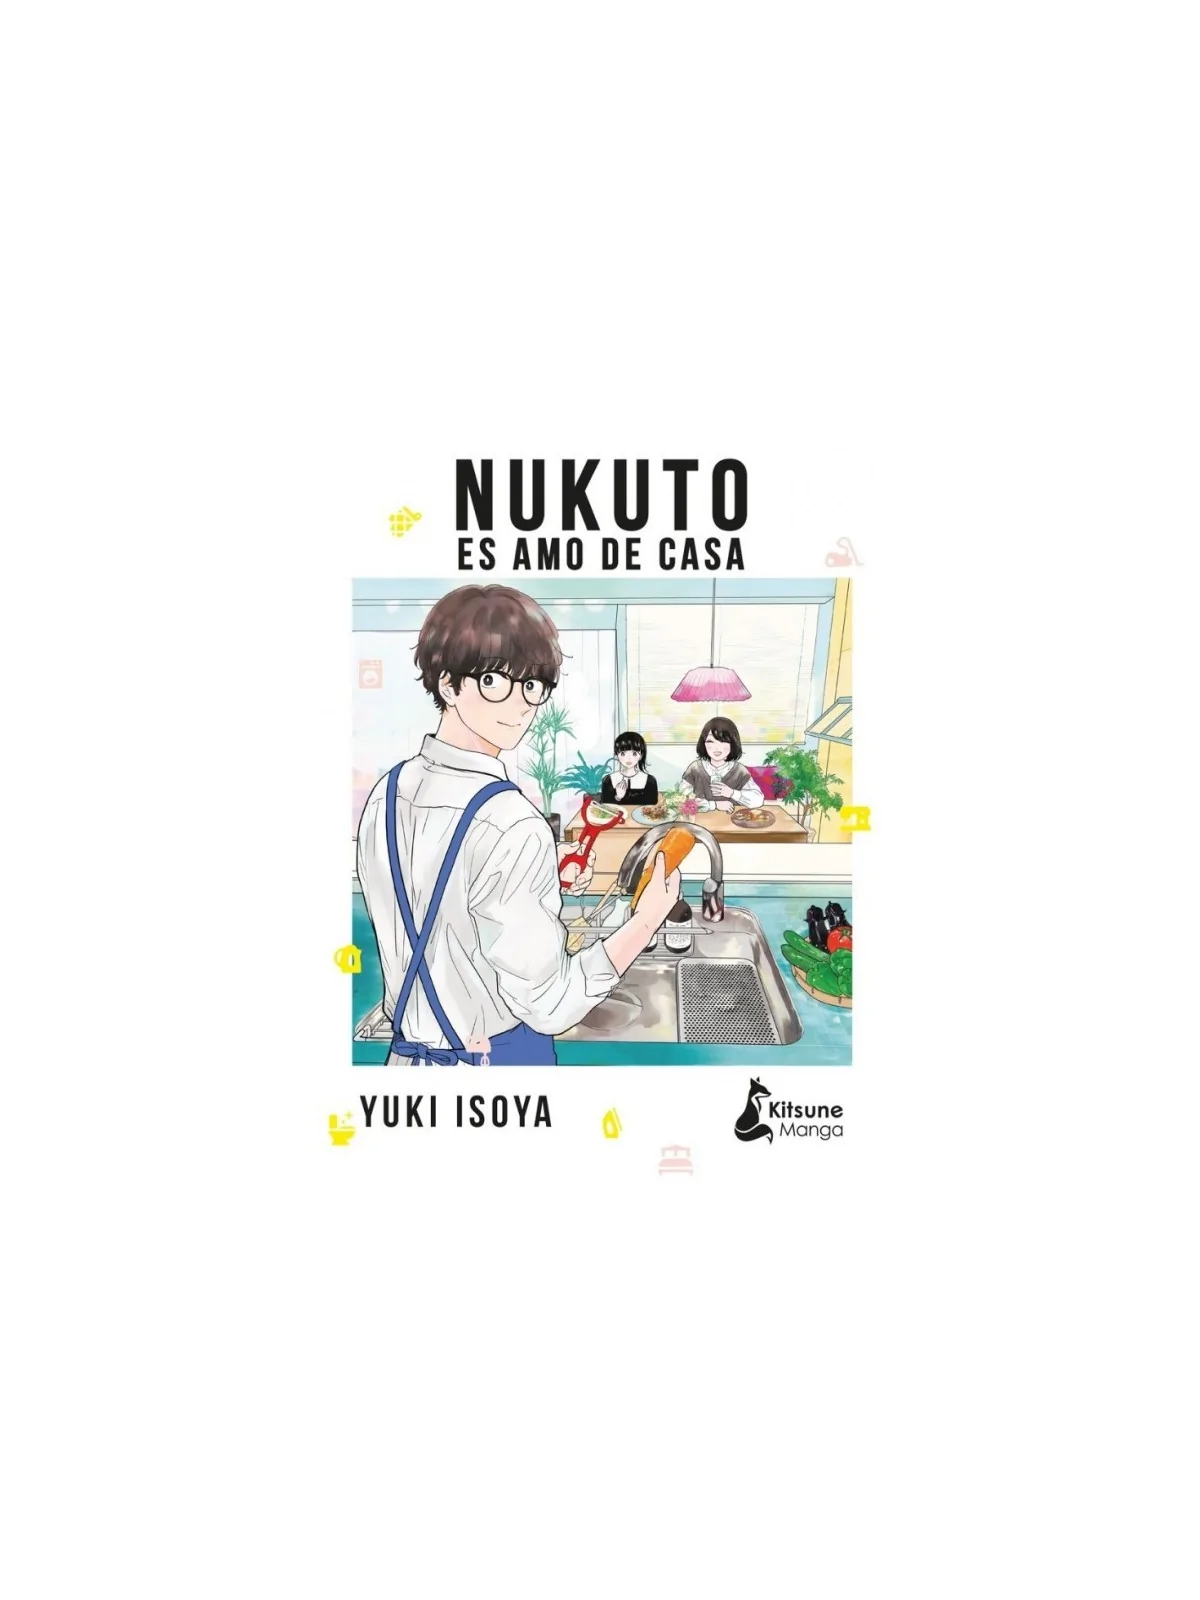 Comprar Nukuto es Amo de Casa barato al mejor precio 9,46 € de Kitsune